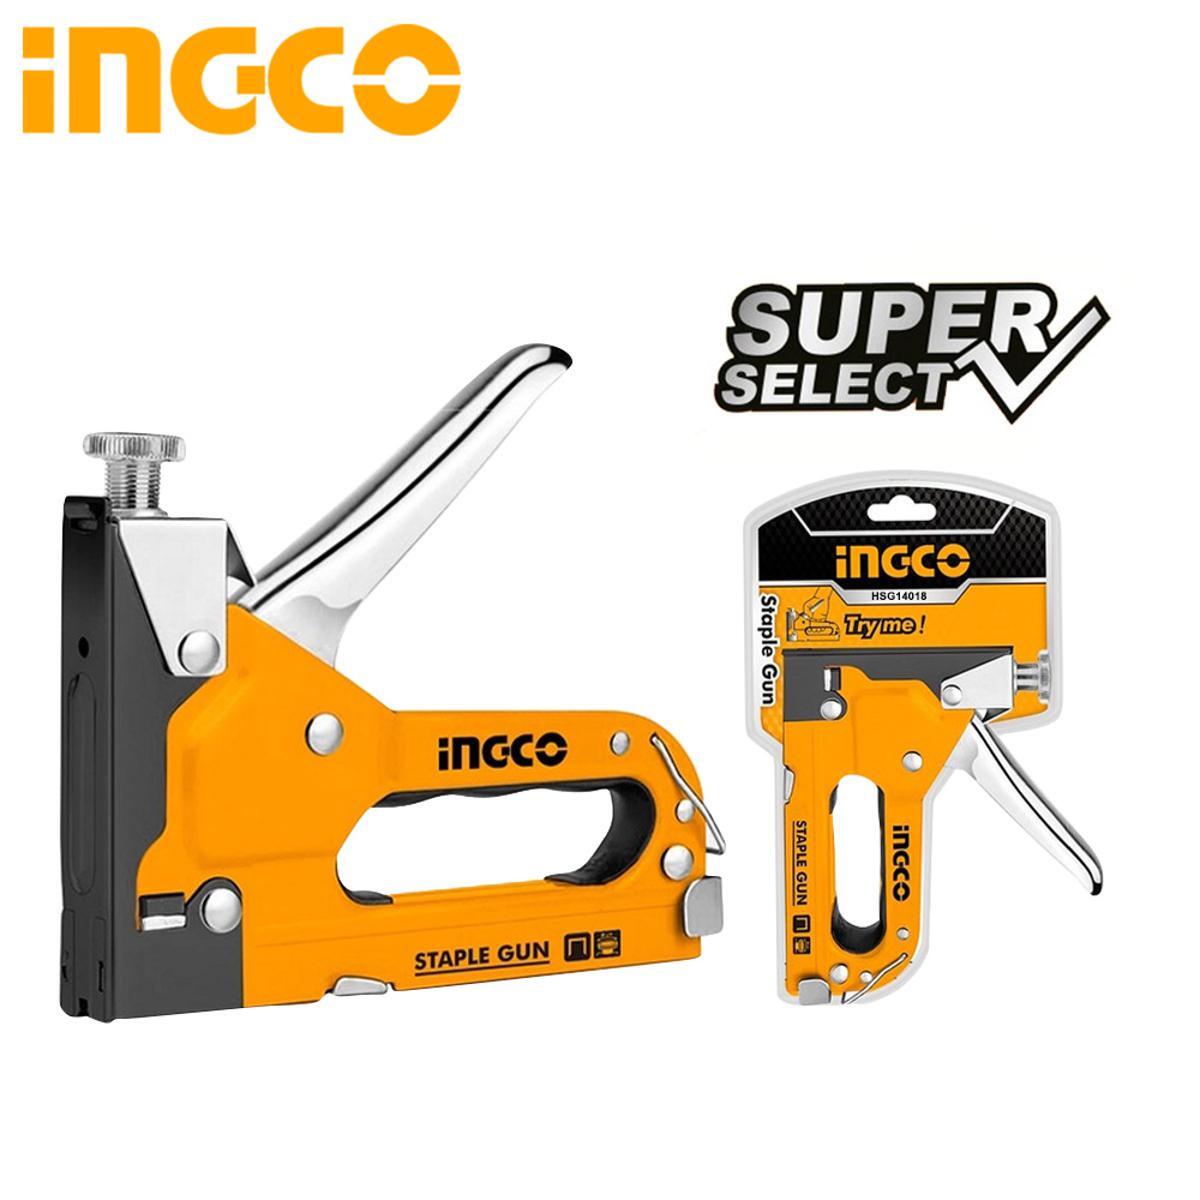 Степлер механический INGCO HSG14018 механический степлер ingco